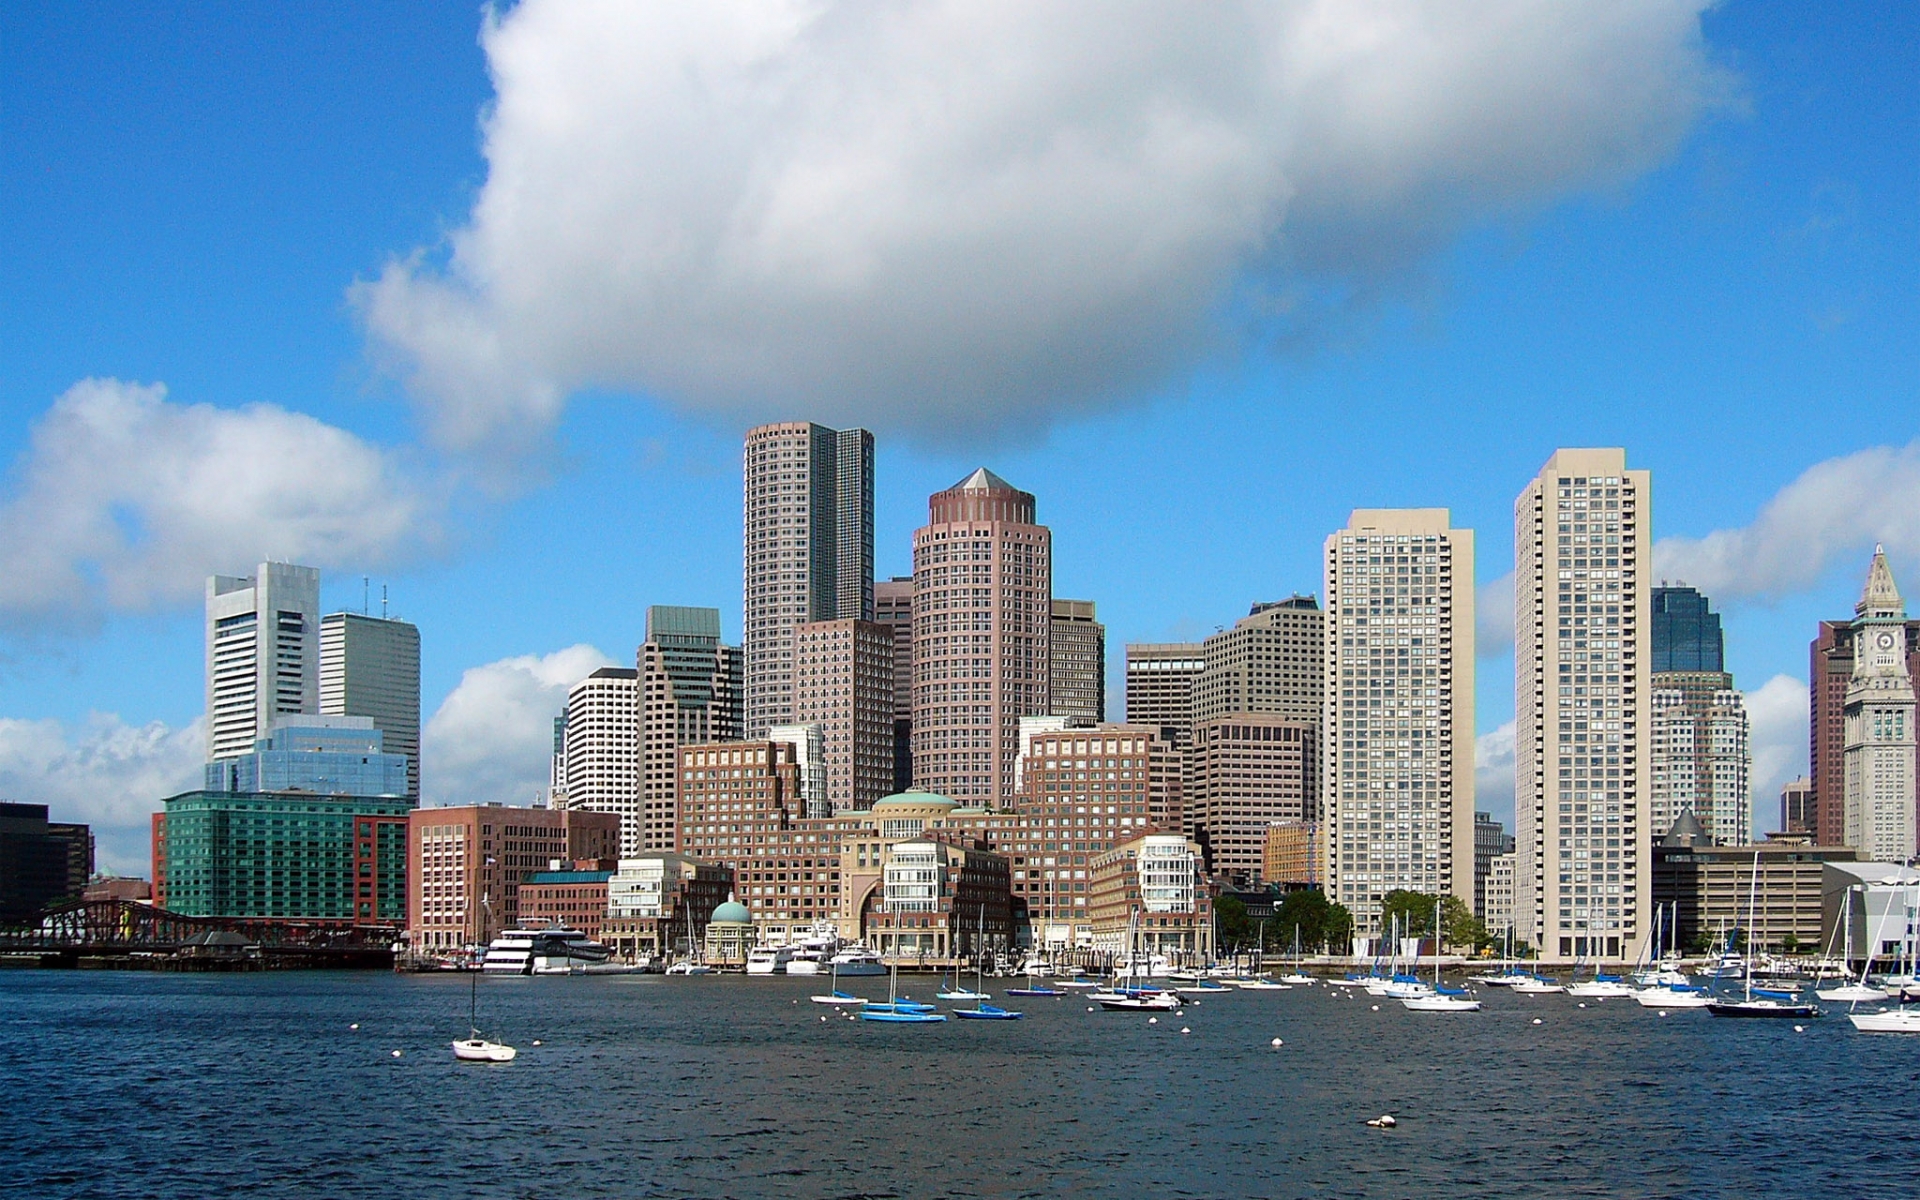 Boston Skyline Backgrounds Hd Pixelstalknet